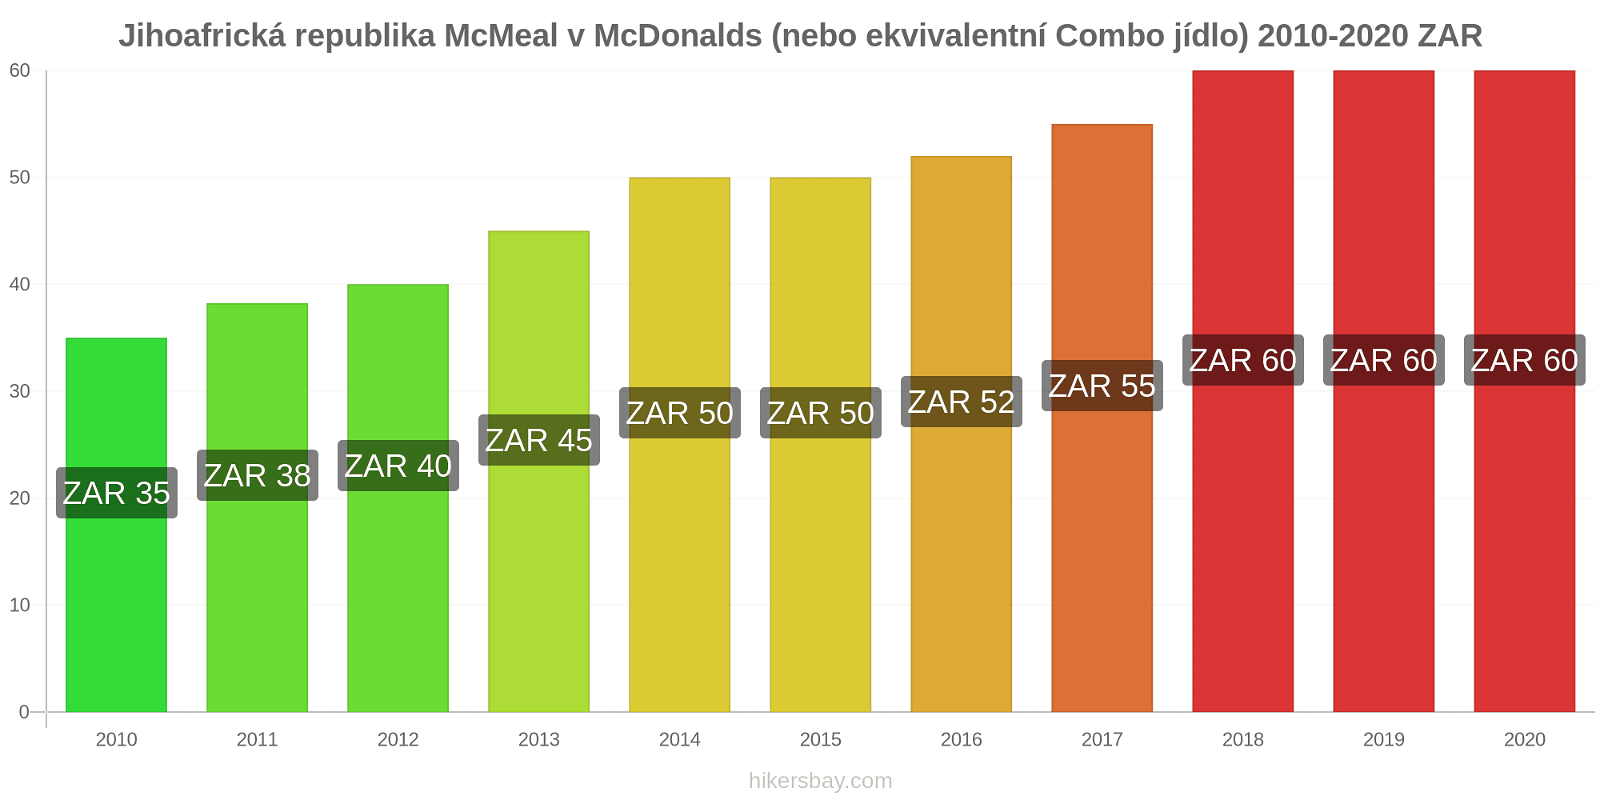 Jihoafrická republika změny cen McMeal v McDonalds (nebo ekvivalentní Combo jídlo) hikersbay.com